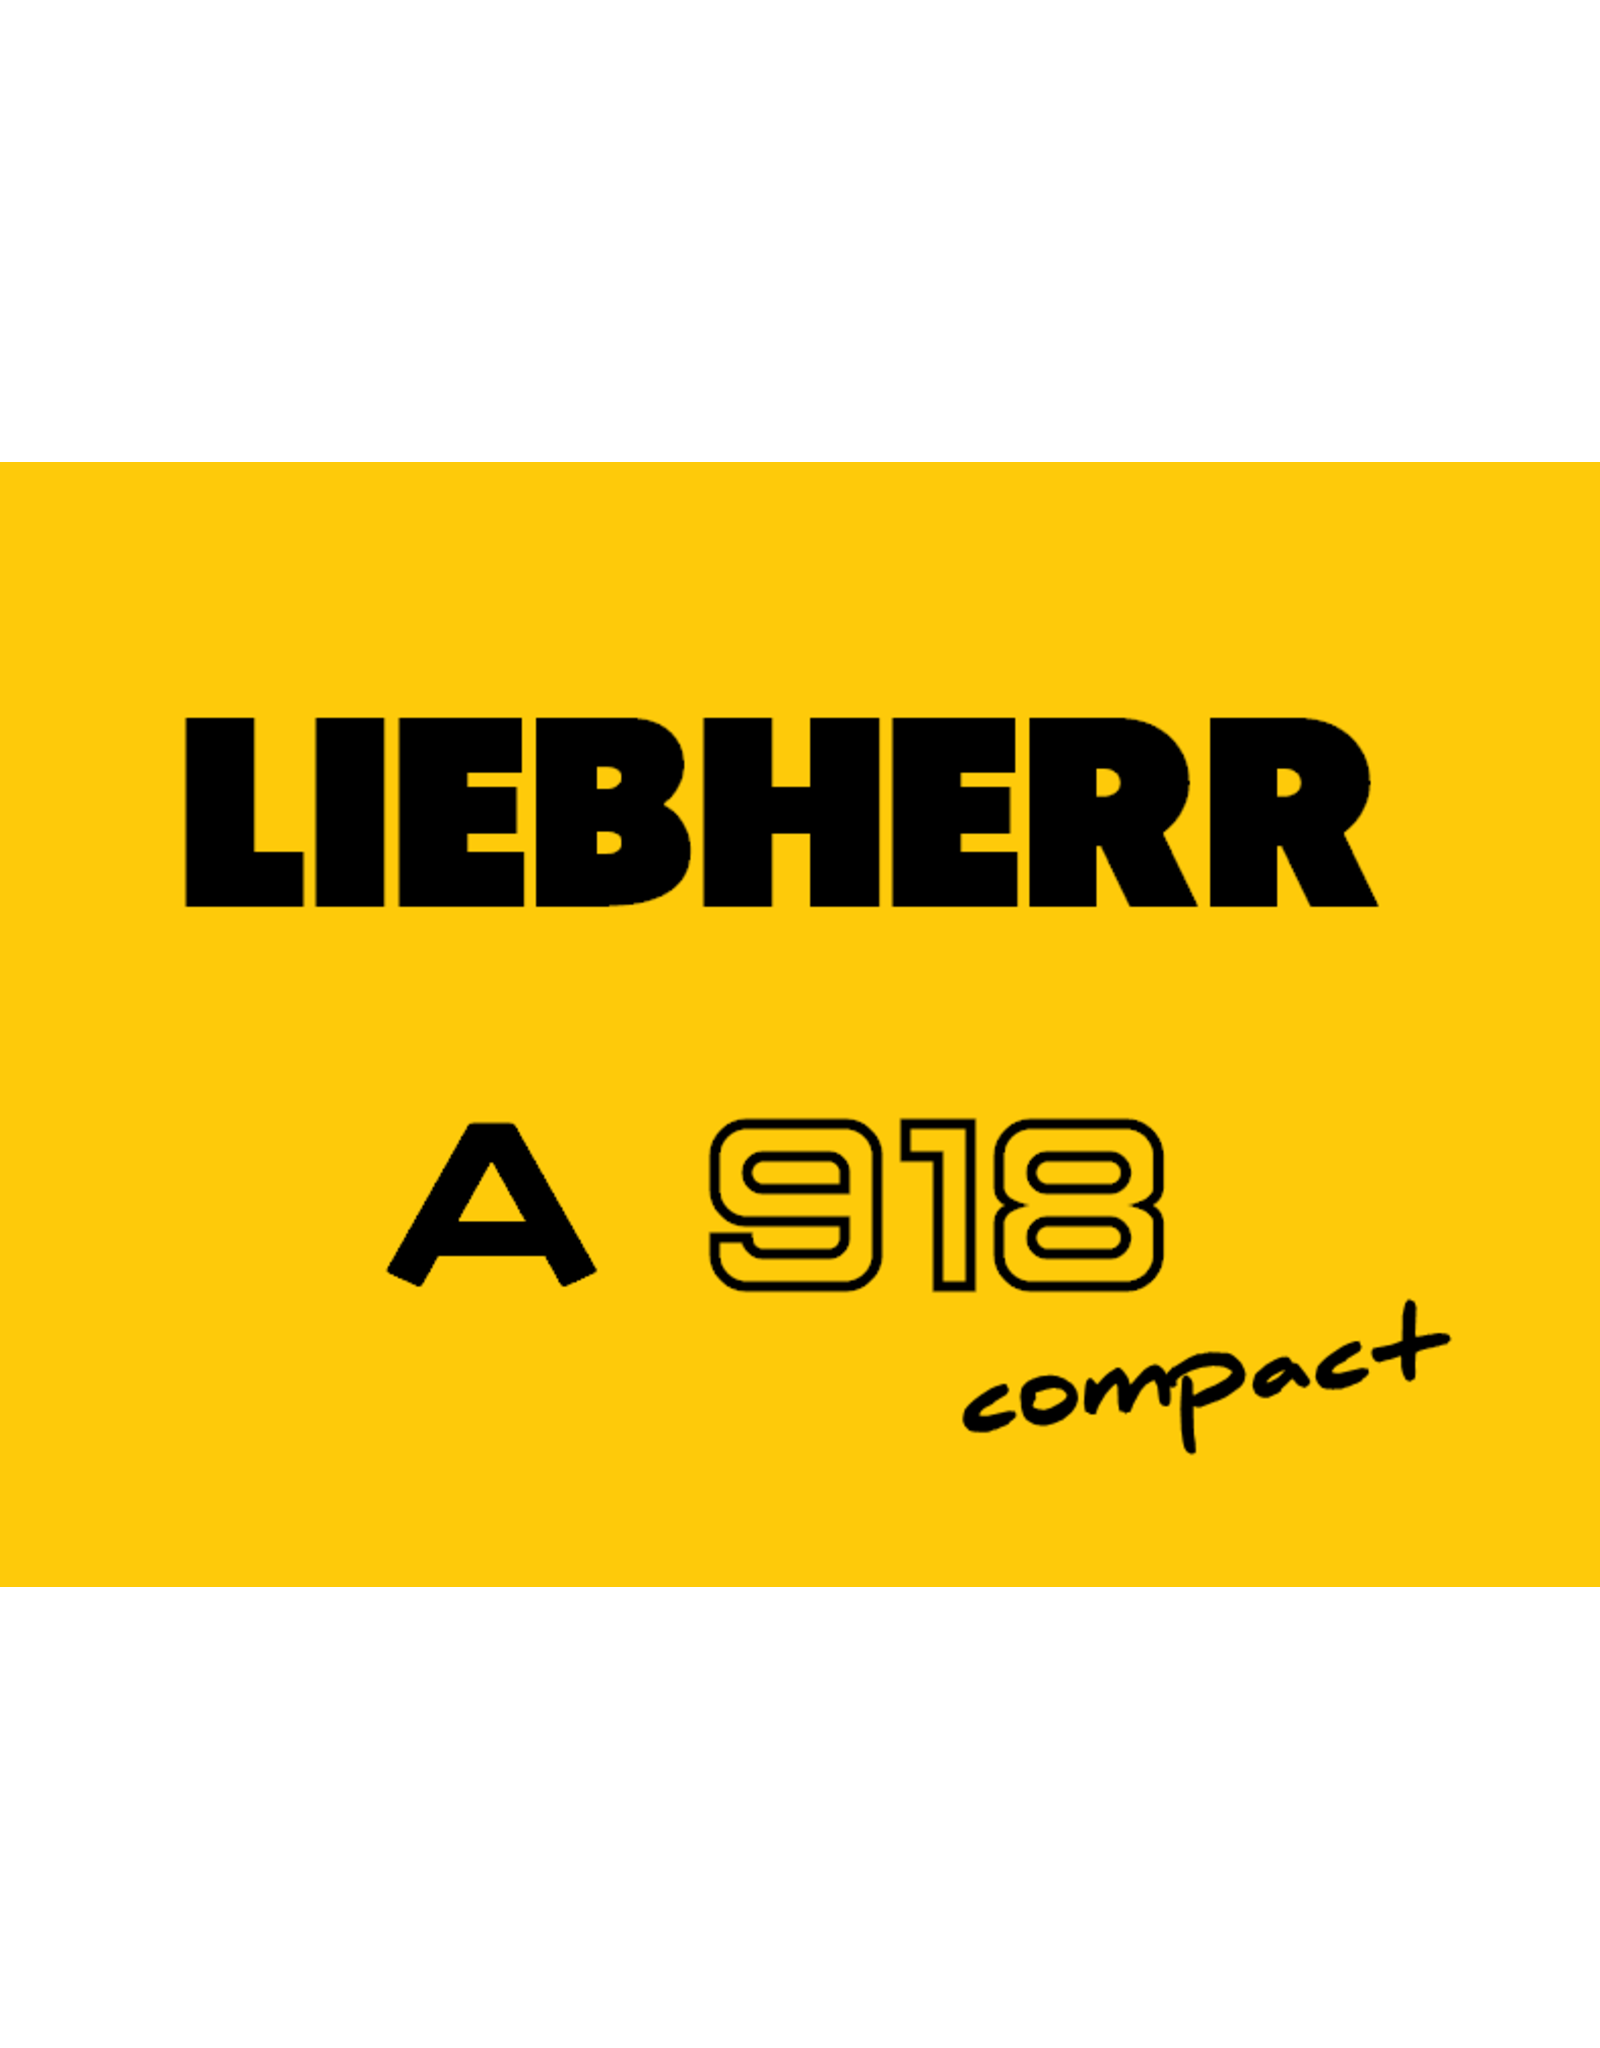 Echle Hartstahl GmbH FOPS für Liebherr A 918 Compact